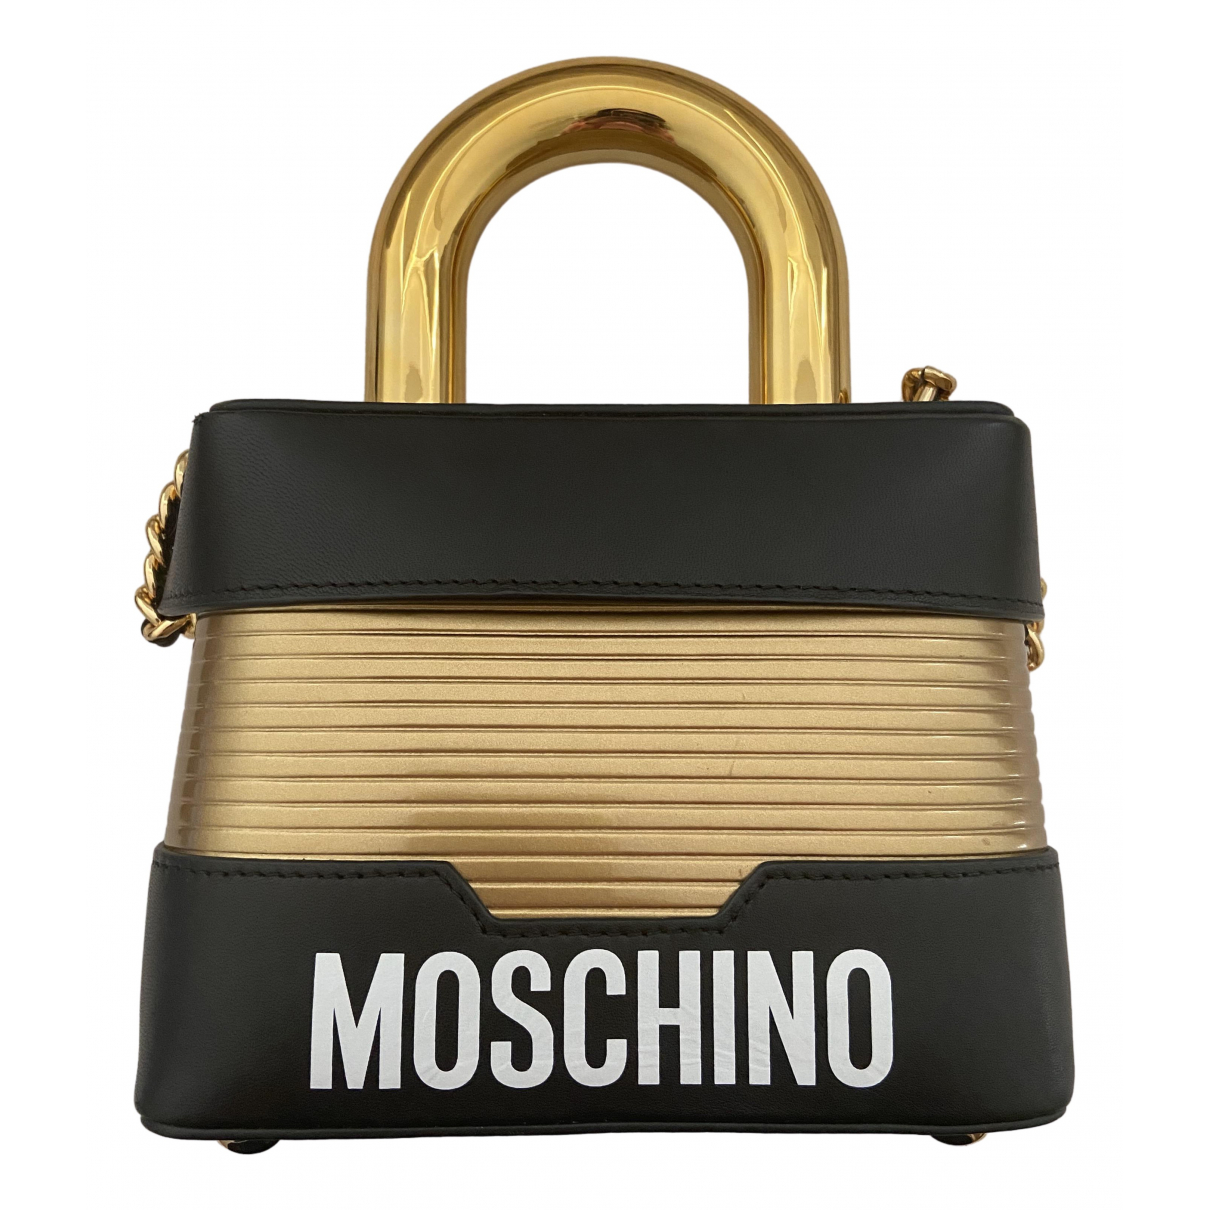 moschino lock bag h&m